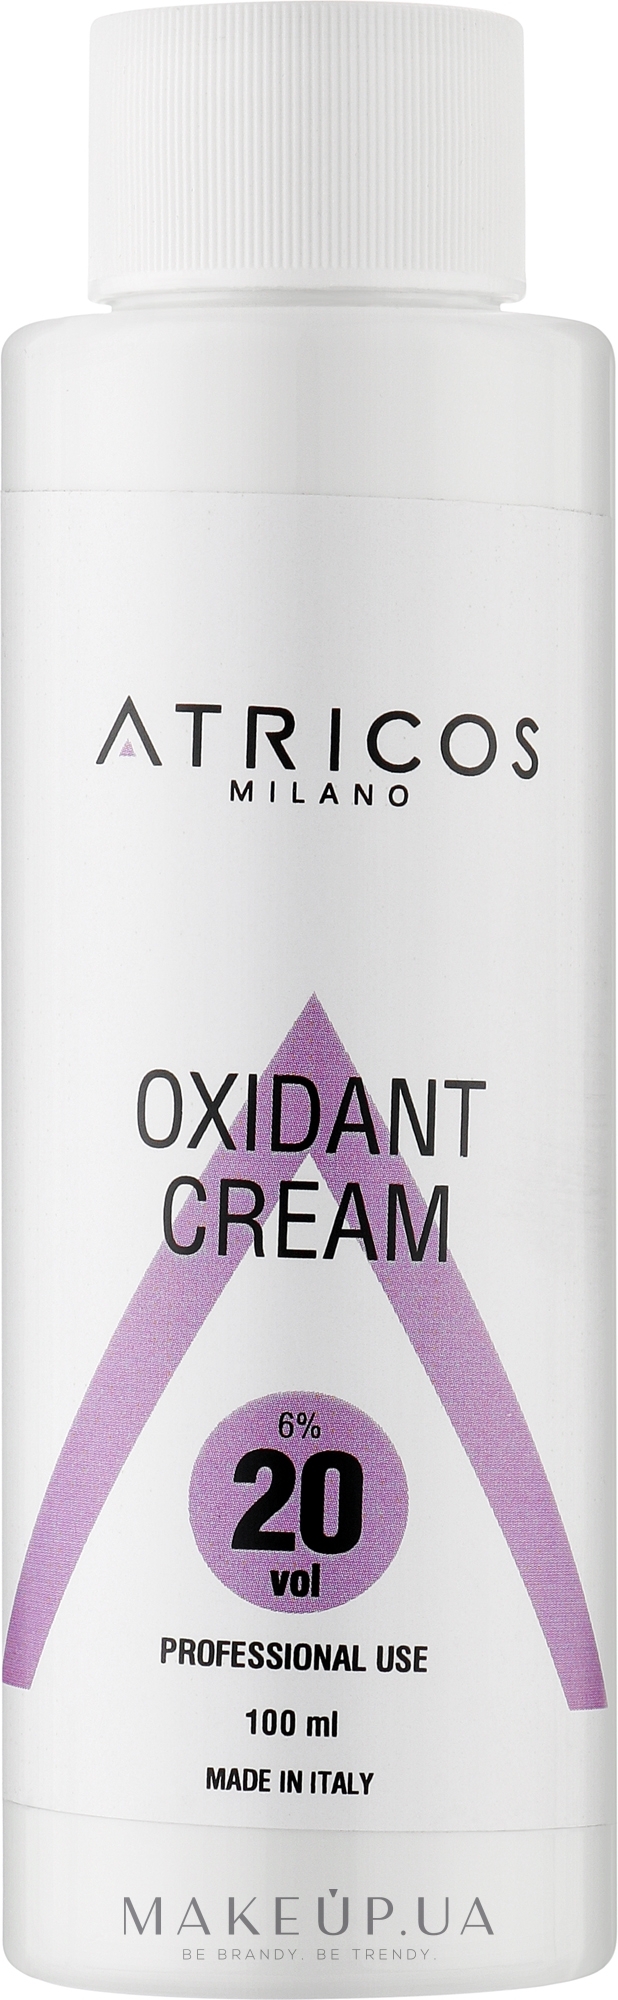 Оксидант-крем для окрашивания и осветления прядей - Atricos Oxidant Cream 20 Vol 6% — фото 100ml